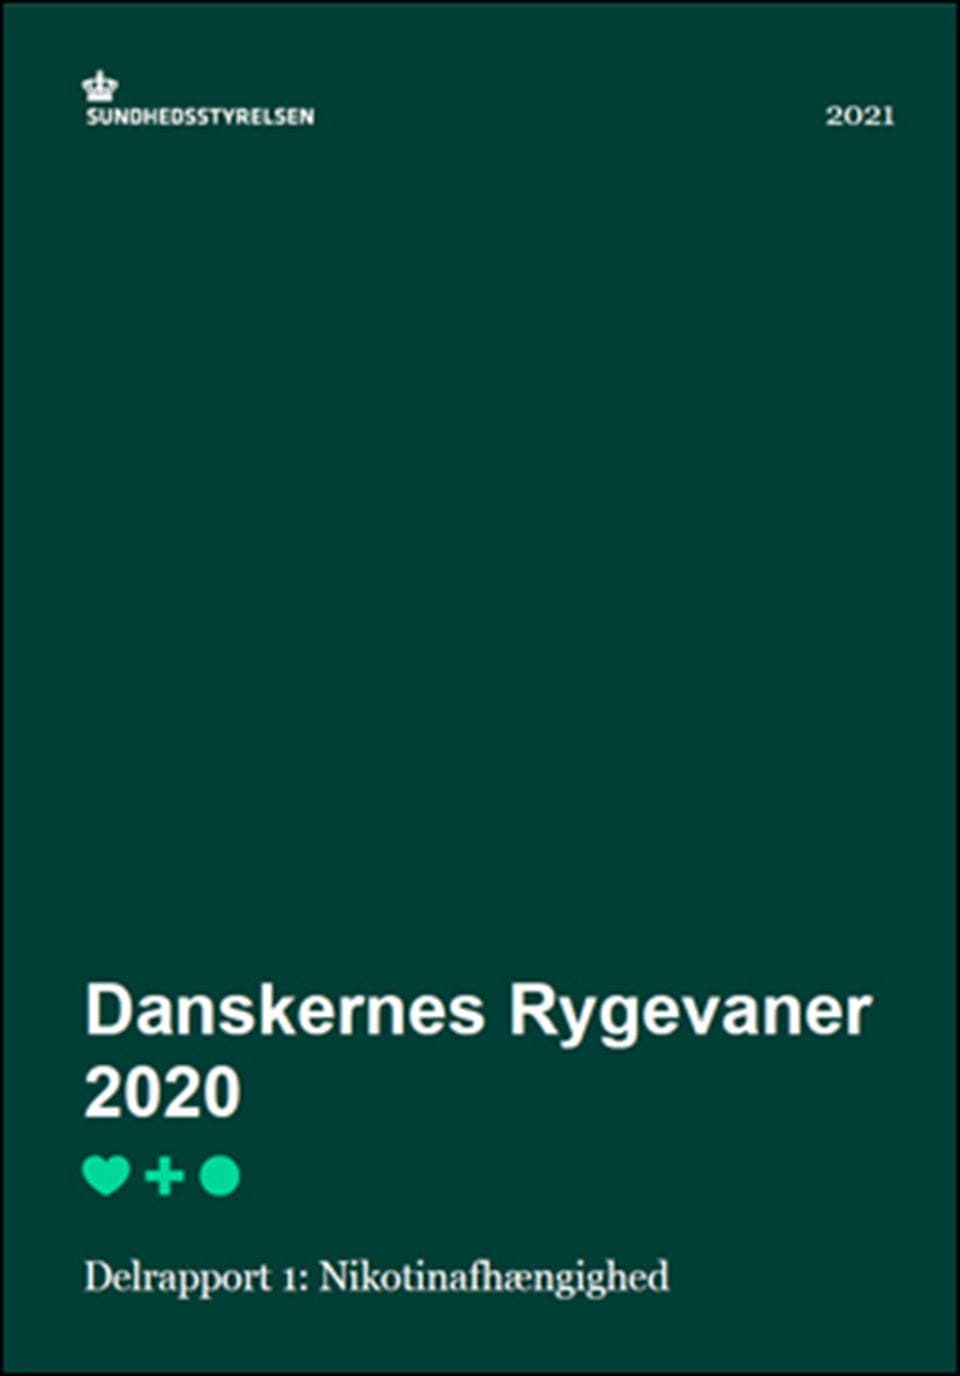 Danskernes rygevaner 2020 - Delrapport 1: Nikotinafhængighed